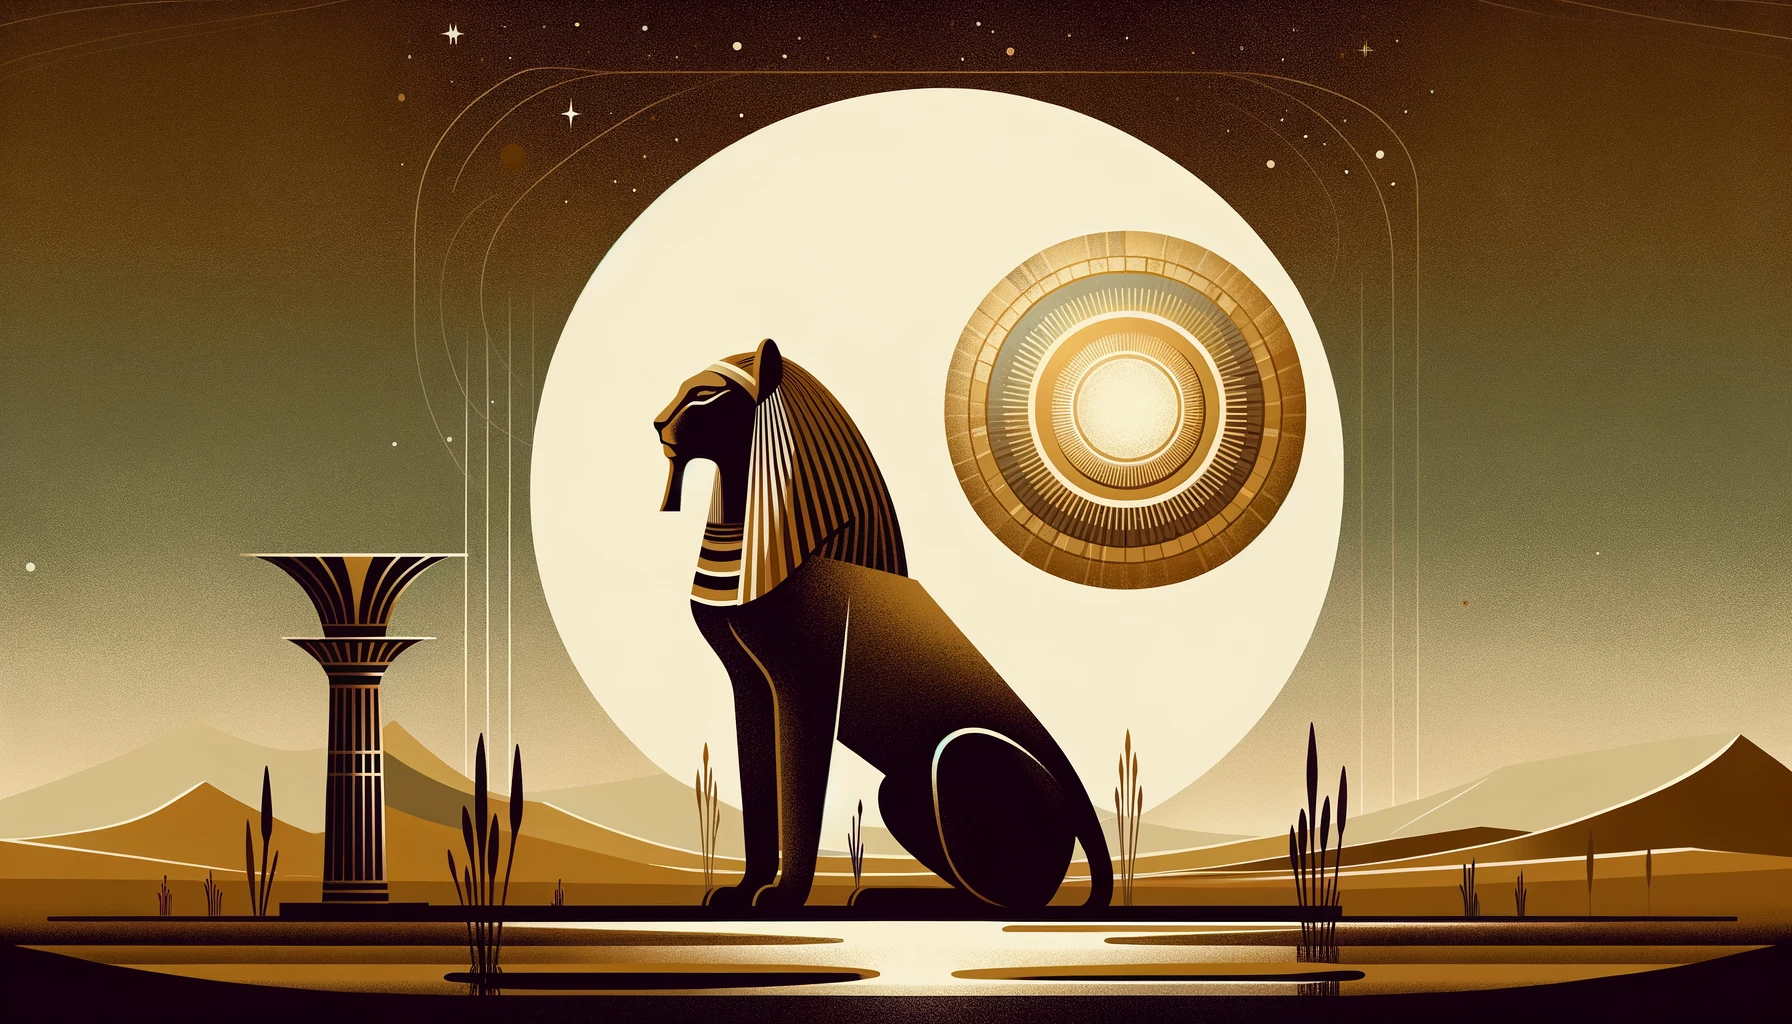 Sekhmet vs Aten: The Lioness Goddess vs The Sun Disk